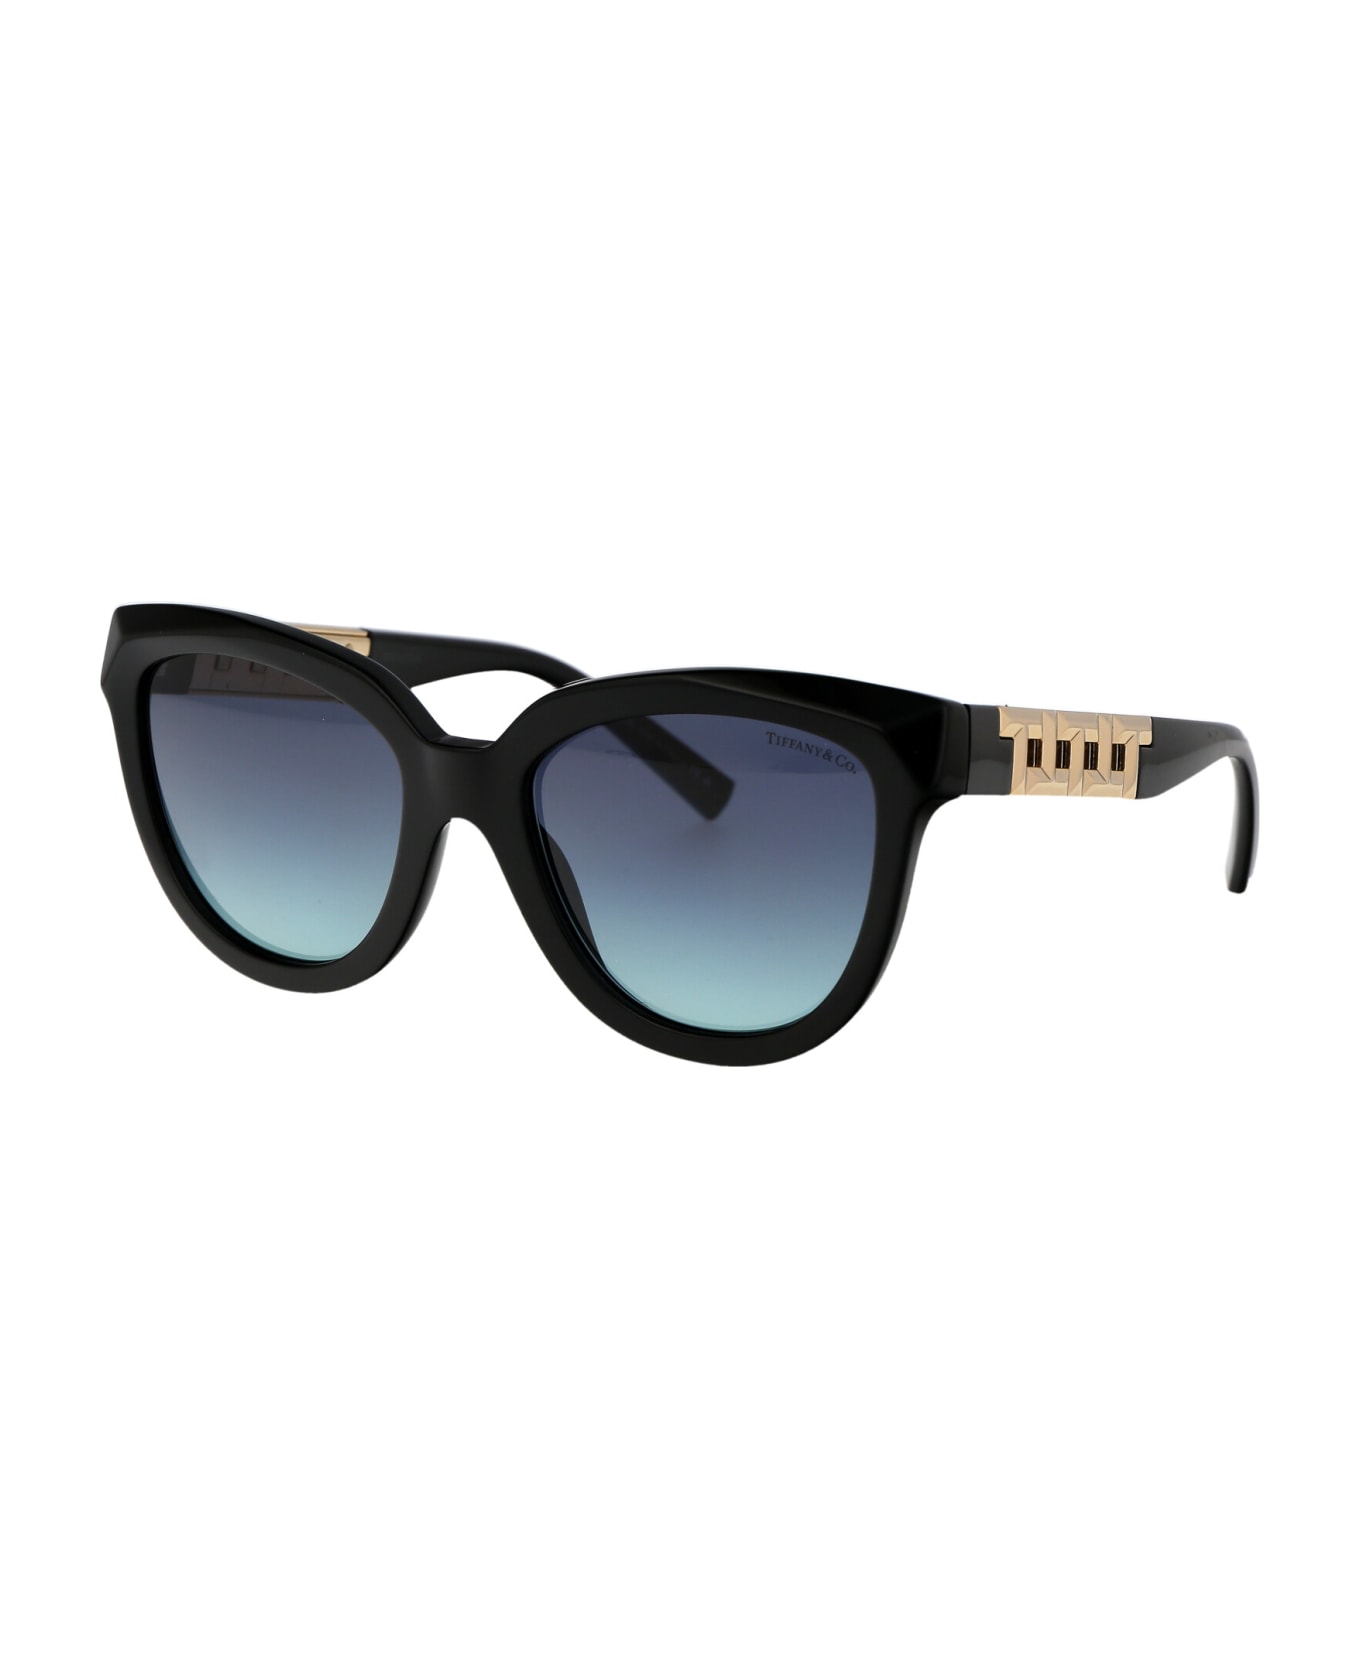 Tiffany & Co. 0tf4215 Sunglasses - 83429S Black